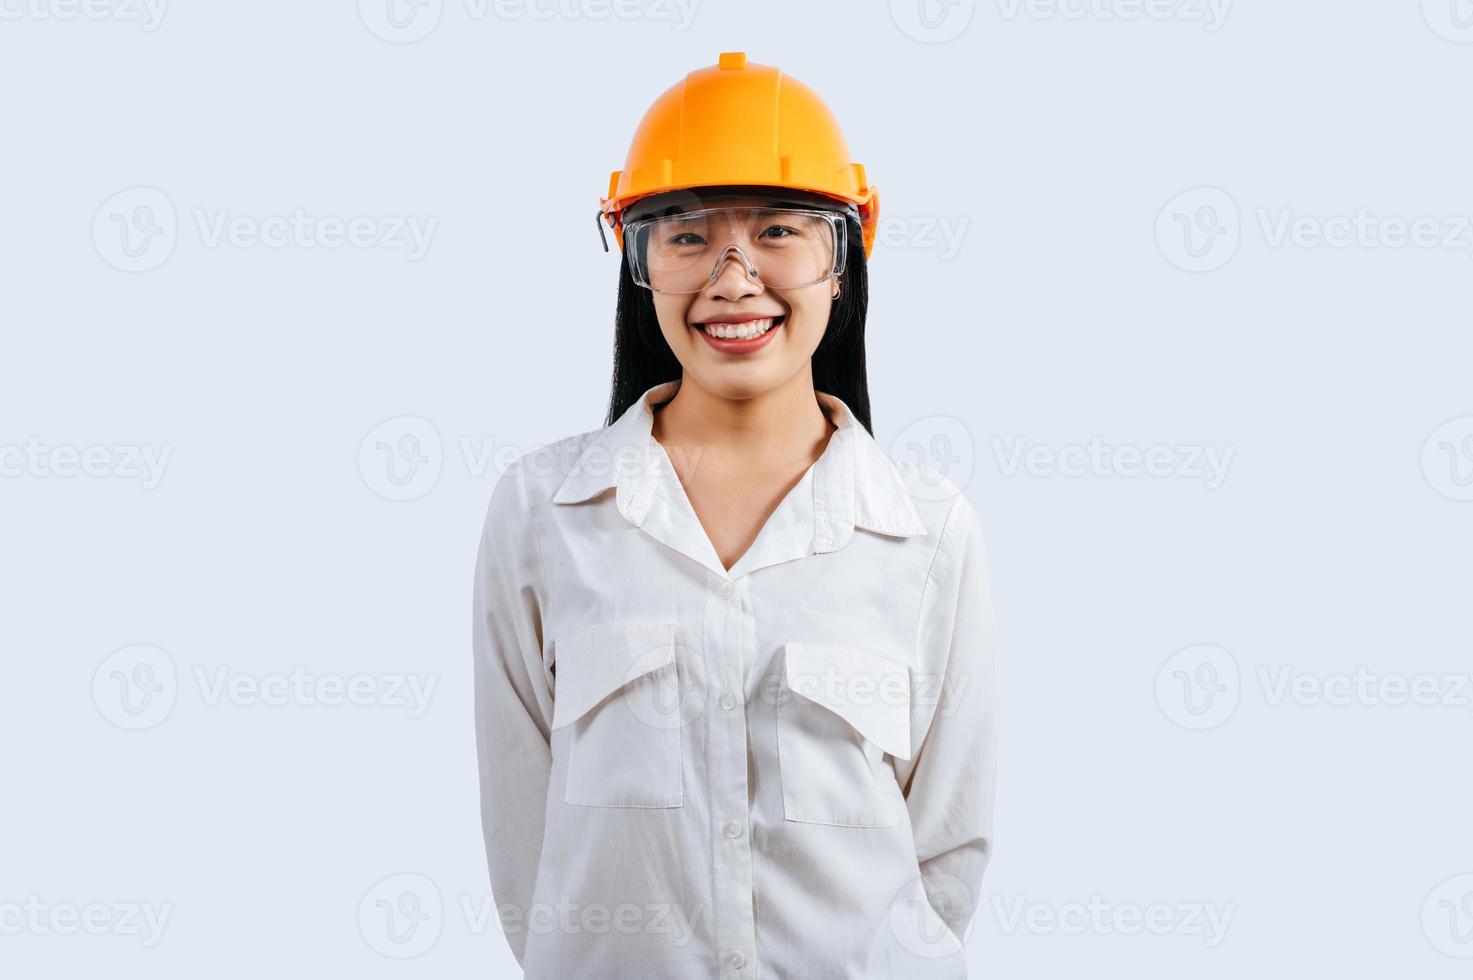 jovem fêmea engenheiro vestindo amarelo capacete ficar de pé com encantador sorrir postura foto